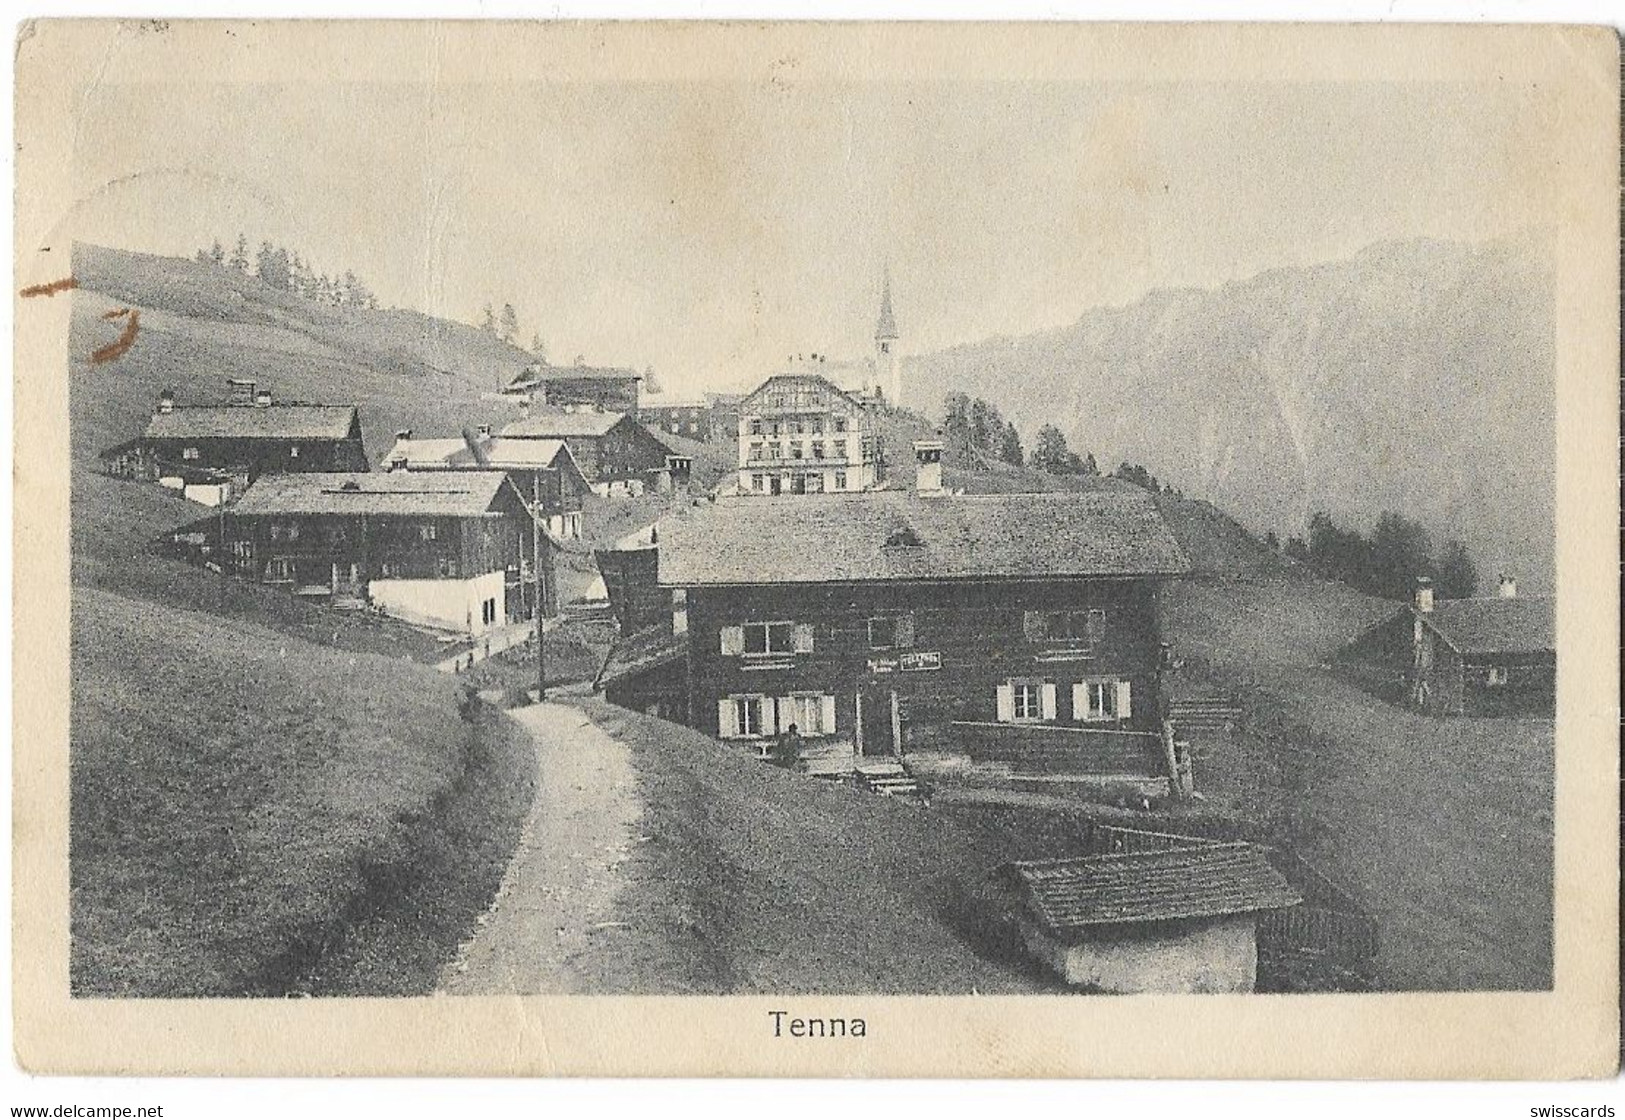 TENNA: Poststelle Mit Dorf 1920 - Tenna